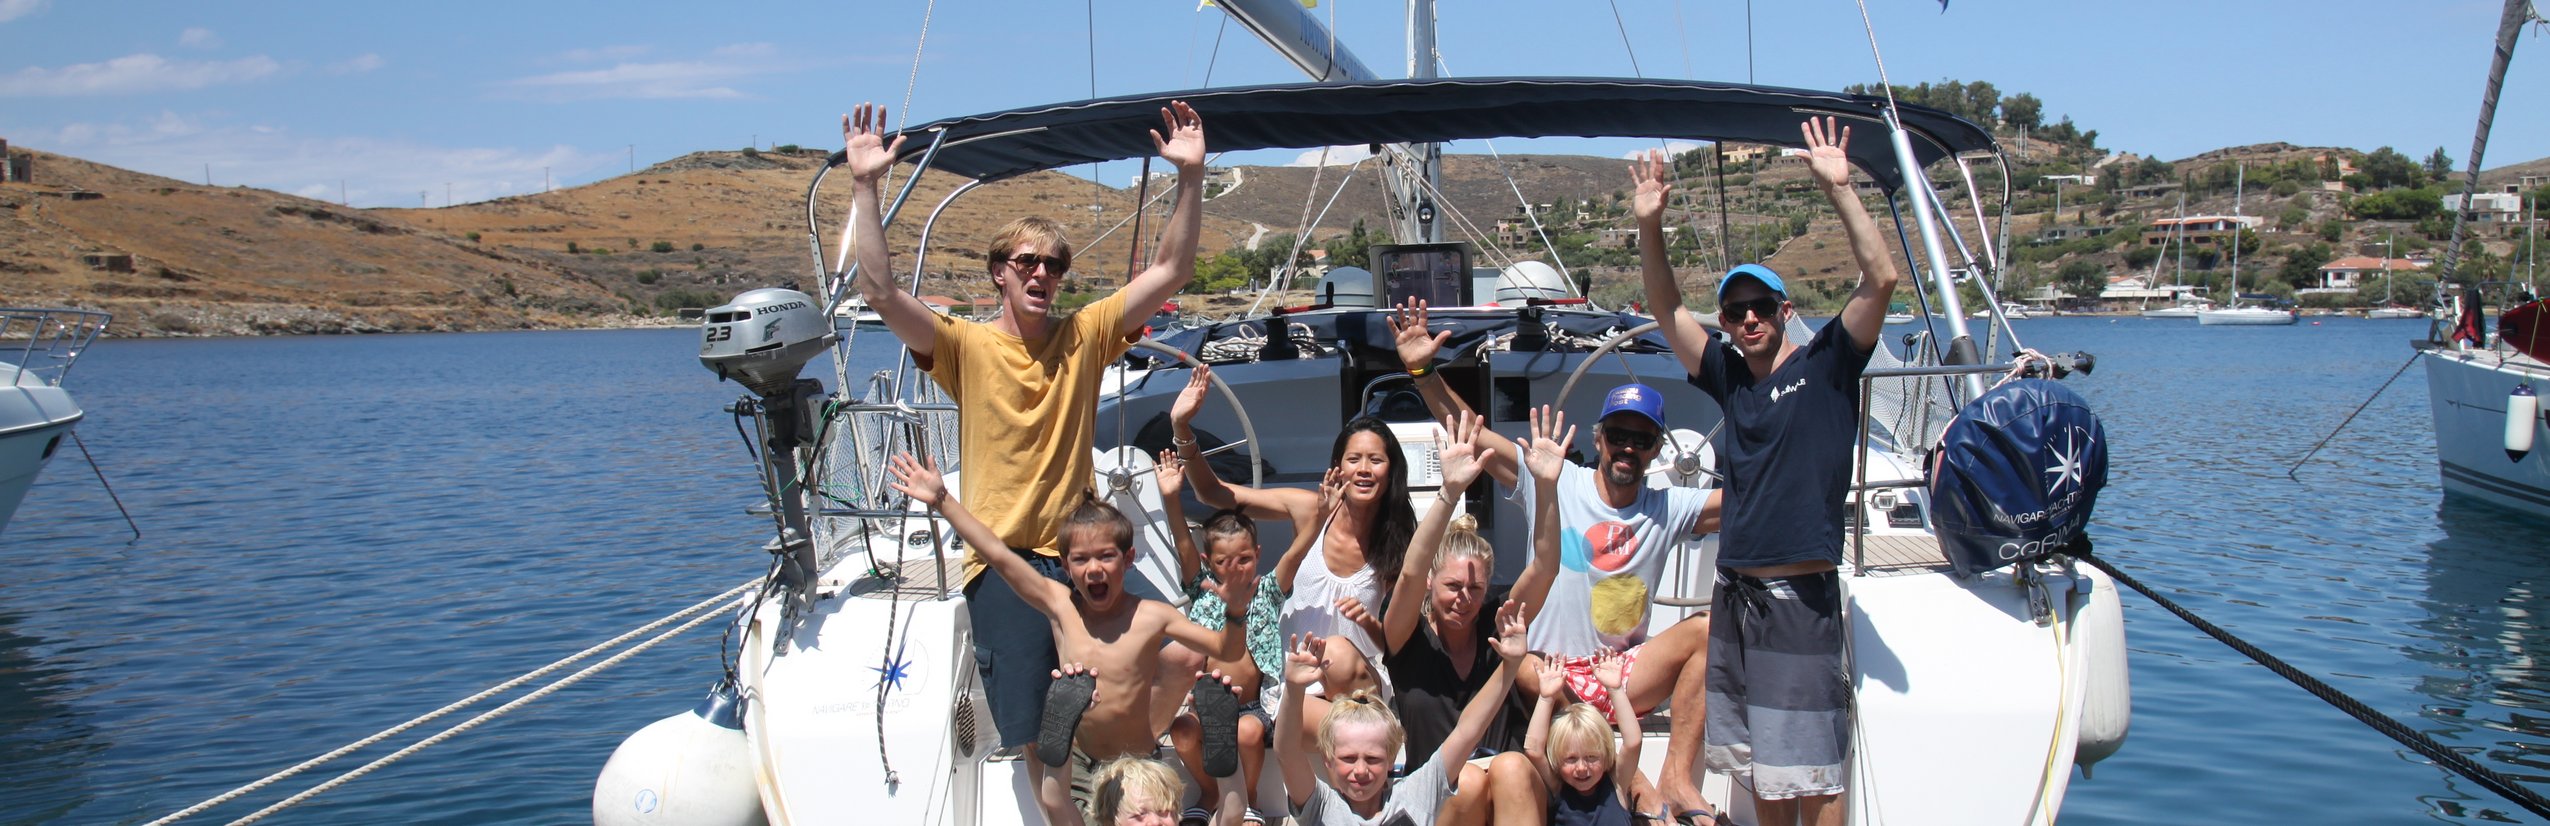 Segelreise mit Kindern - Segeln For Family Reisen - Yacht - Segeln für Familien